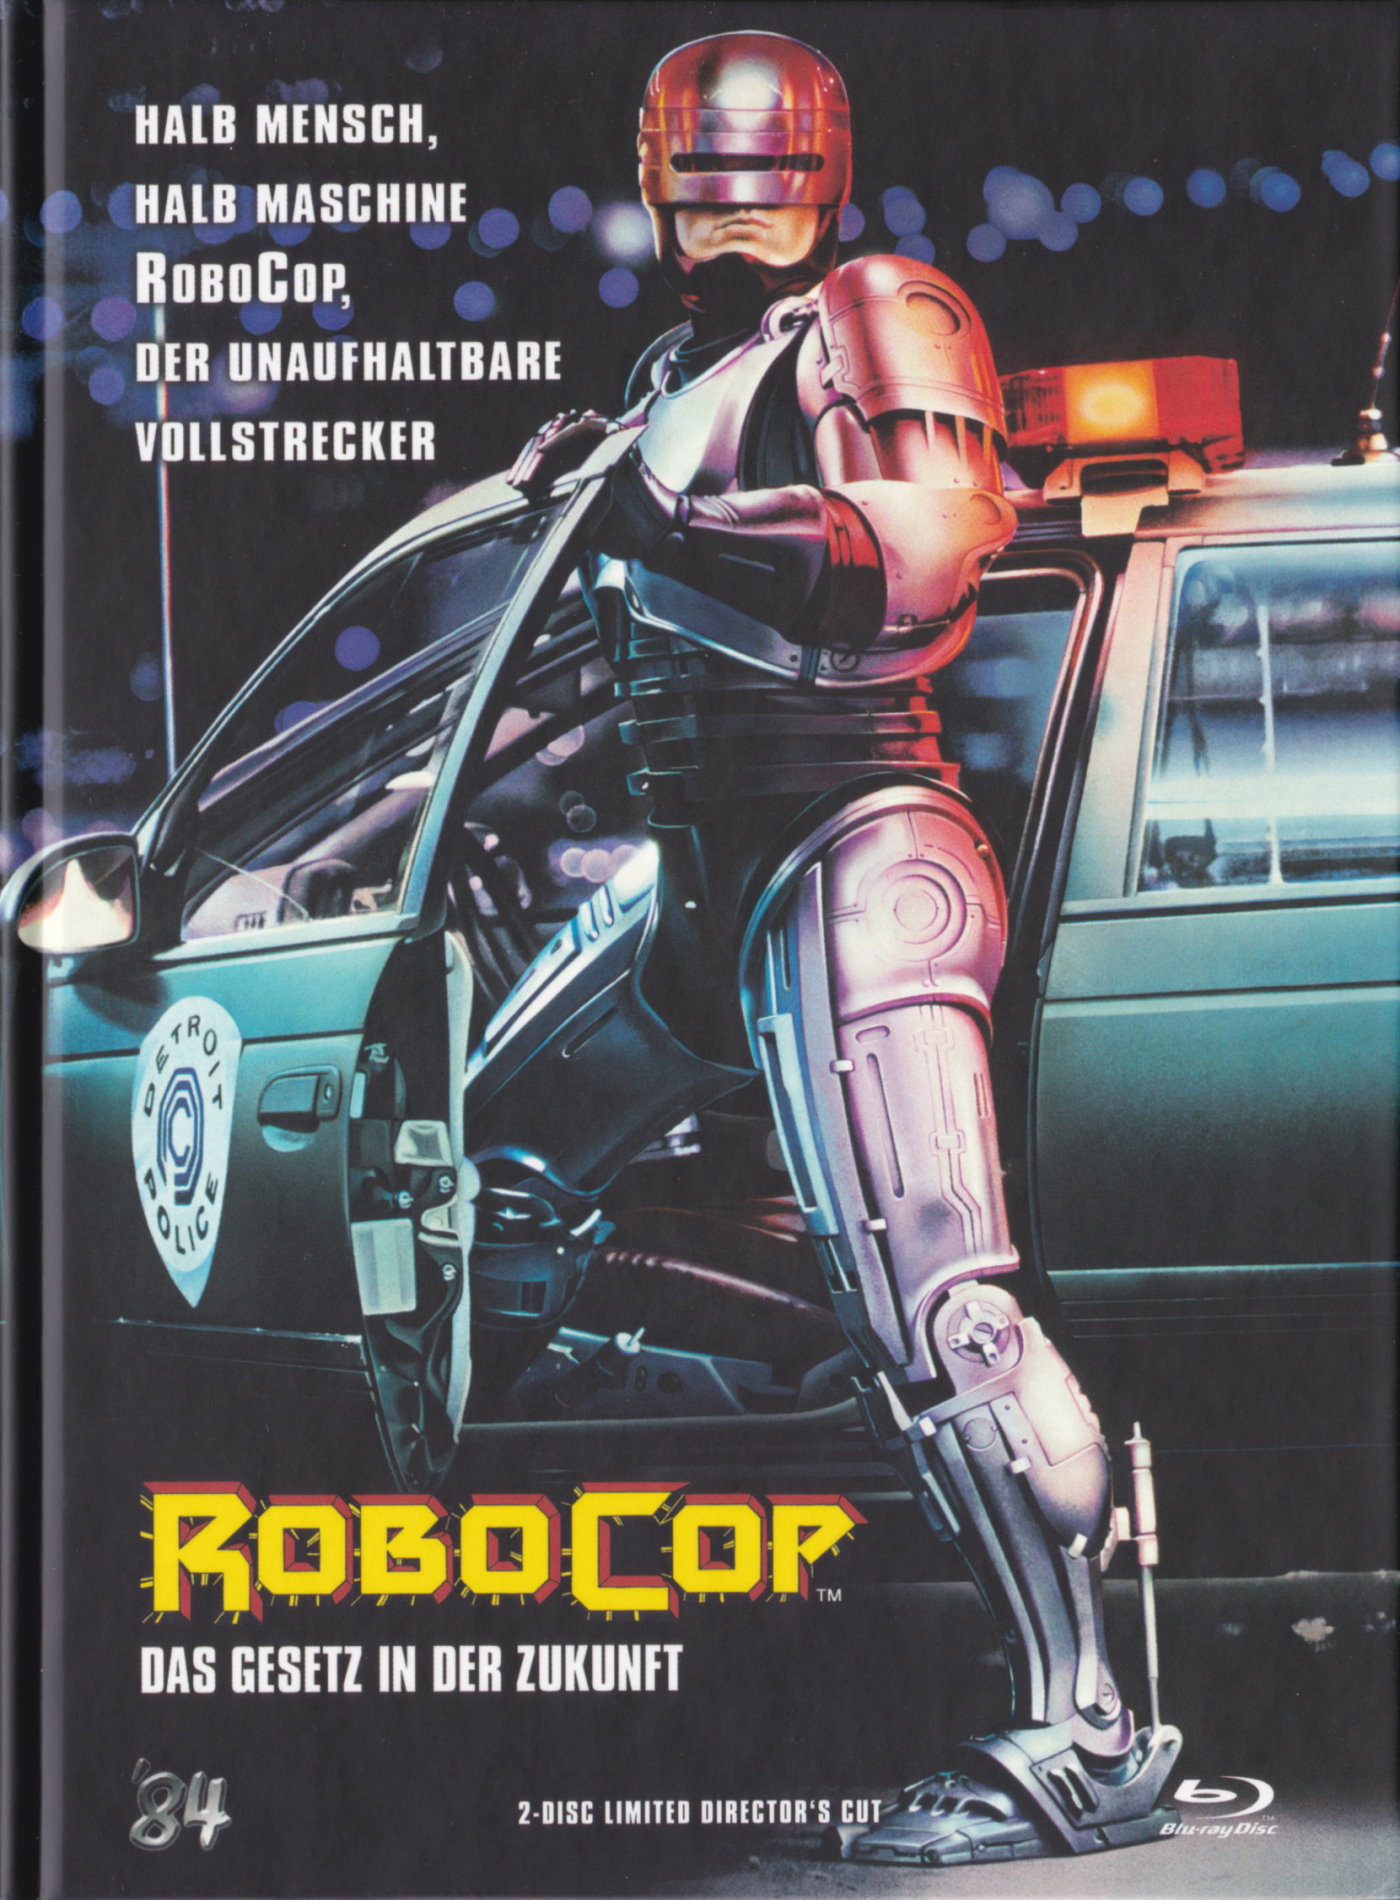 Cover - RoboCop.jpg